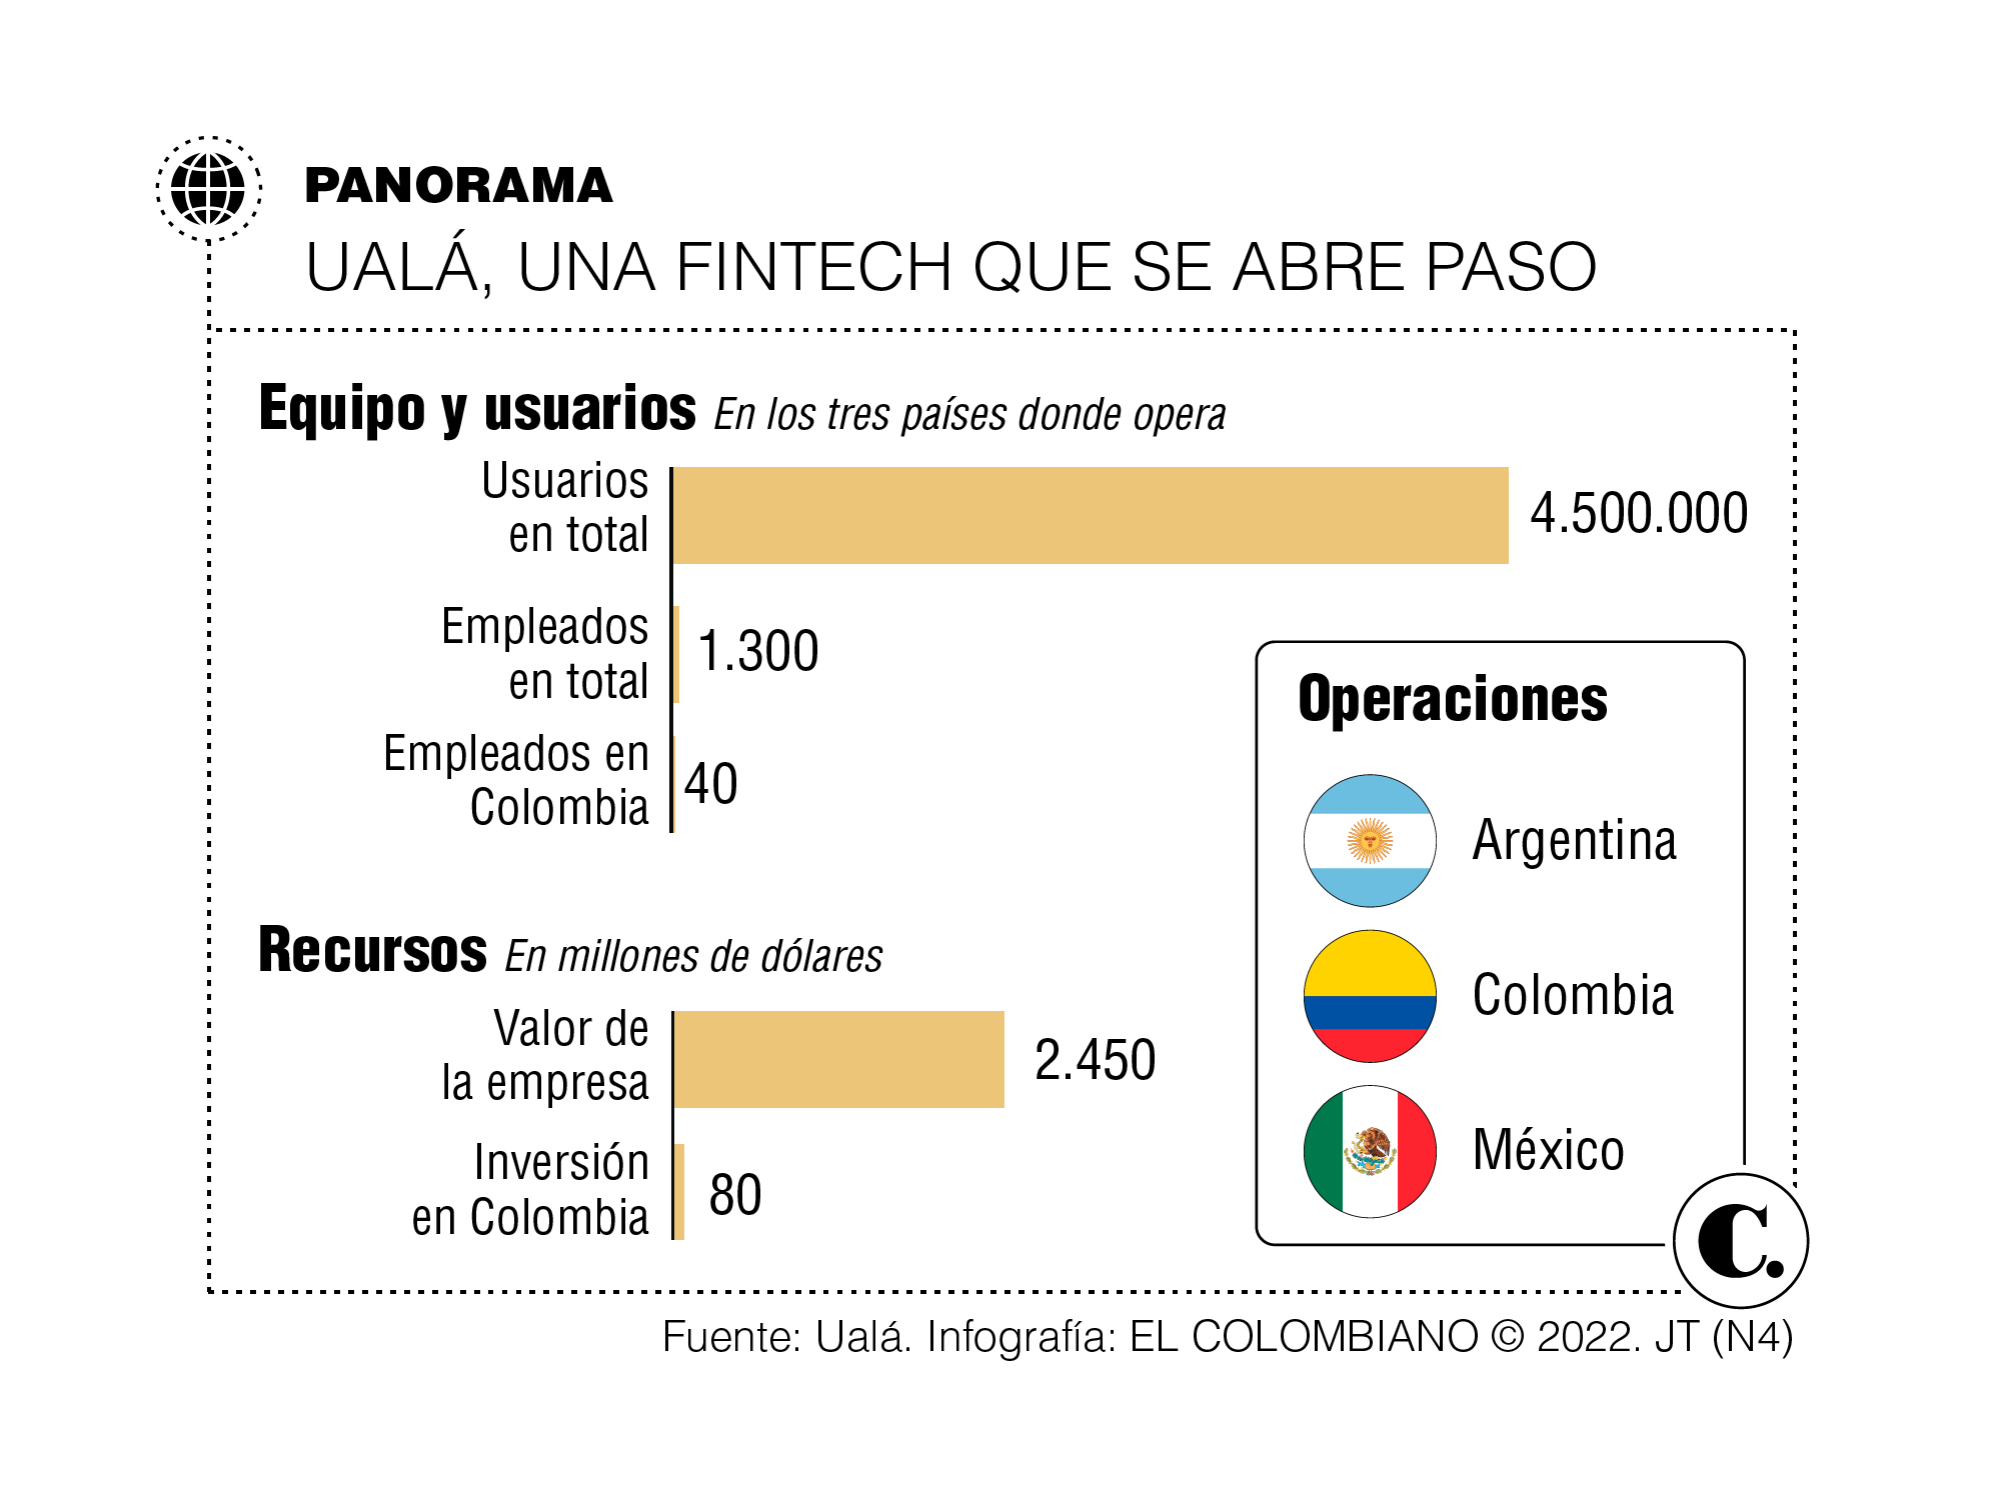 “El enemigo del sistema financiero colombiano es el efectivo”